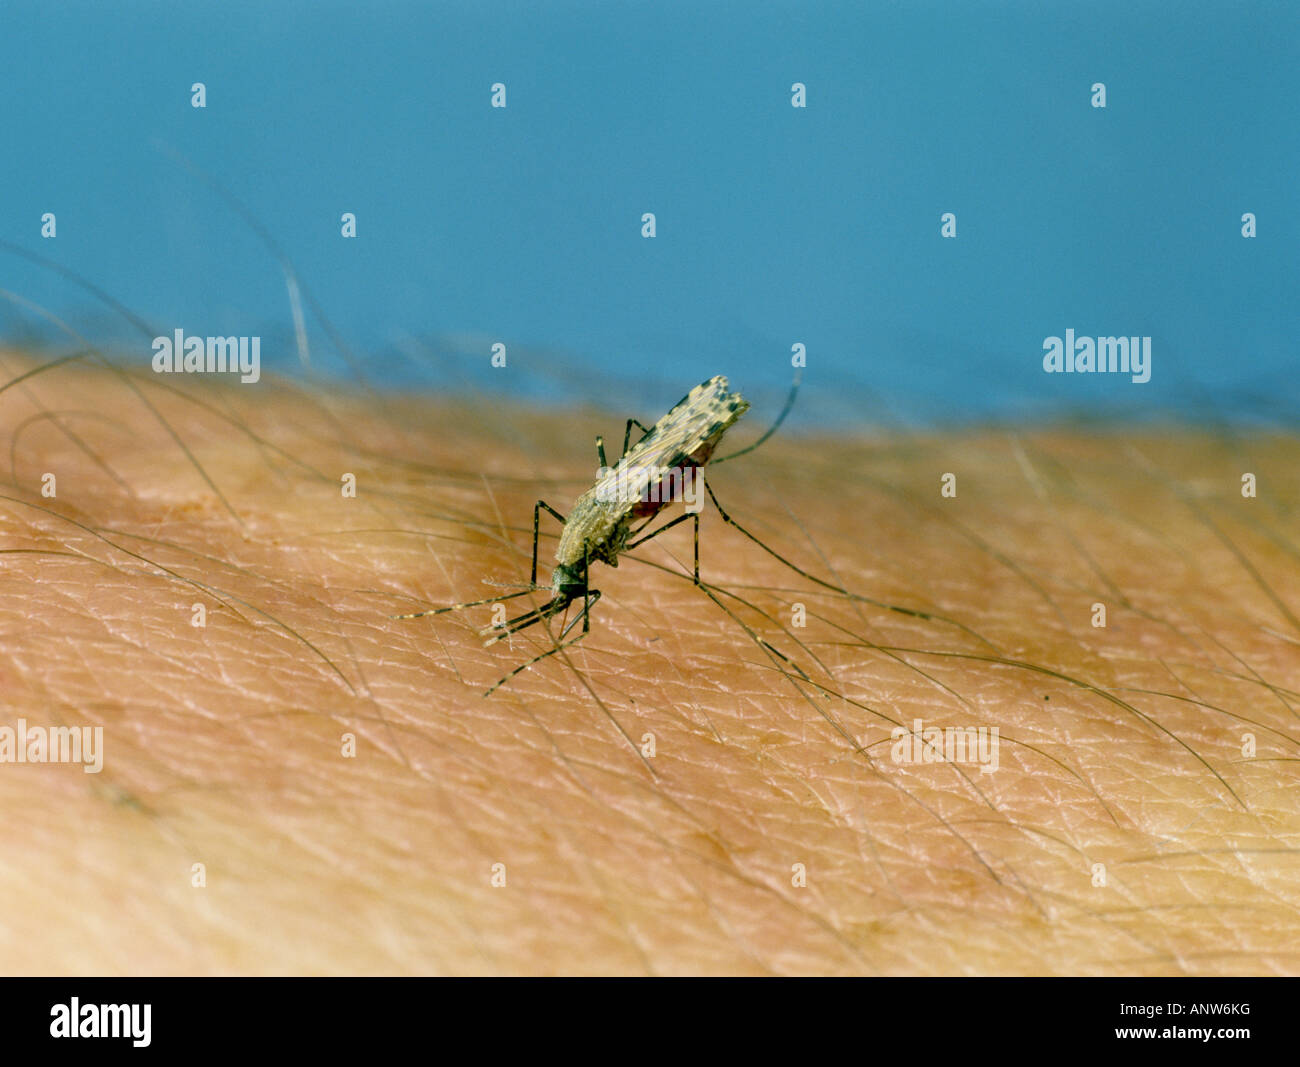 African Malaria vector zanzara Anopheles gambiae alimentazione su mano umana Foto Stock